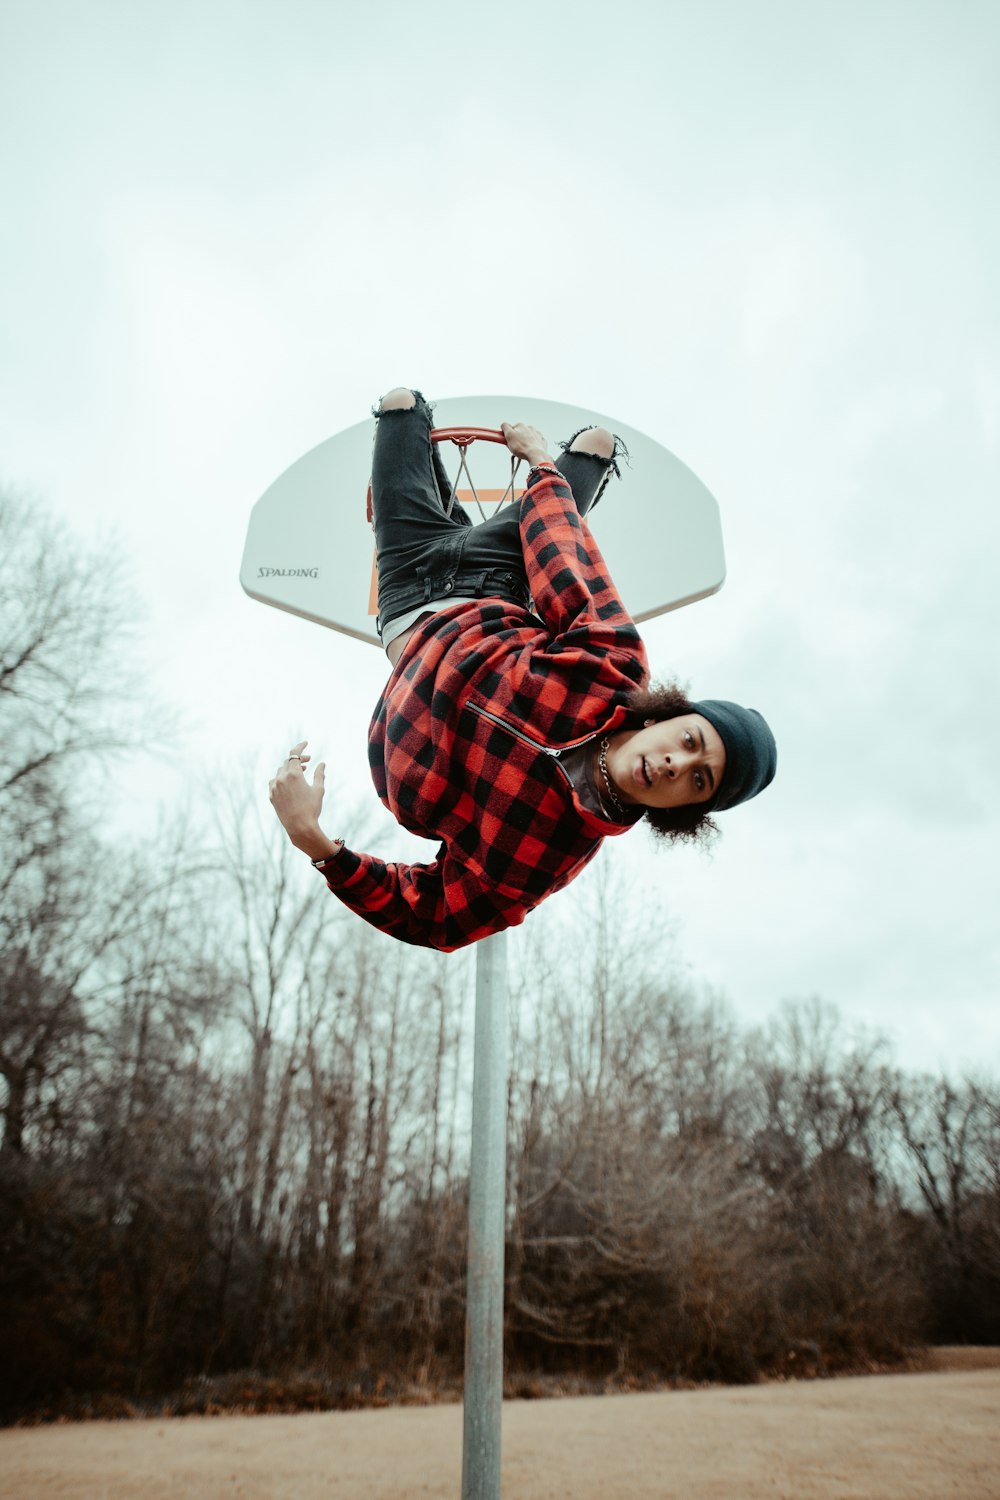 Mann am Basketballrand aufgehängt